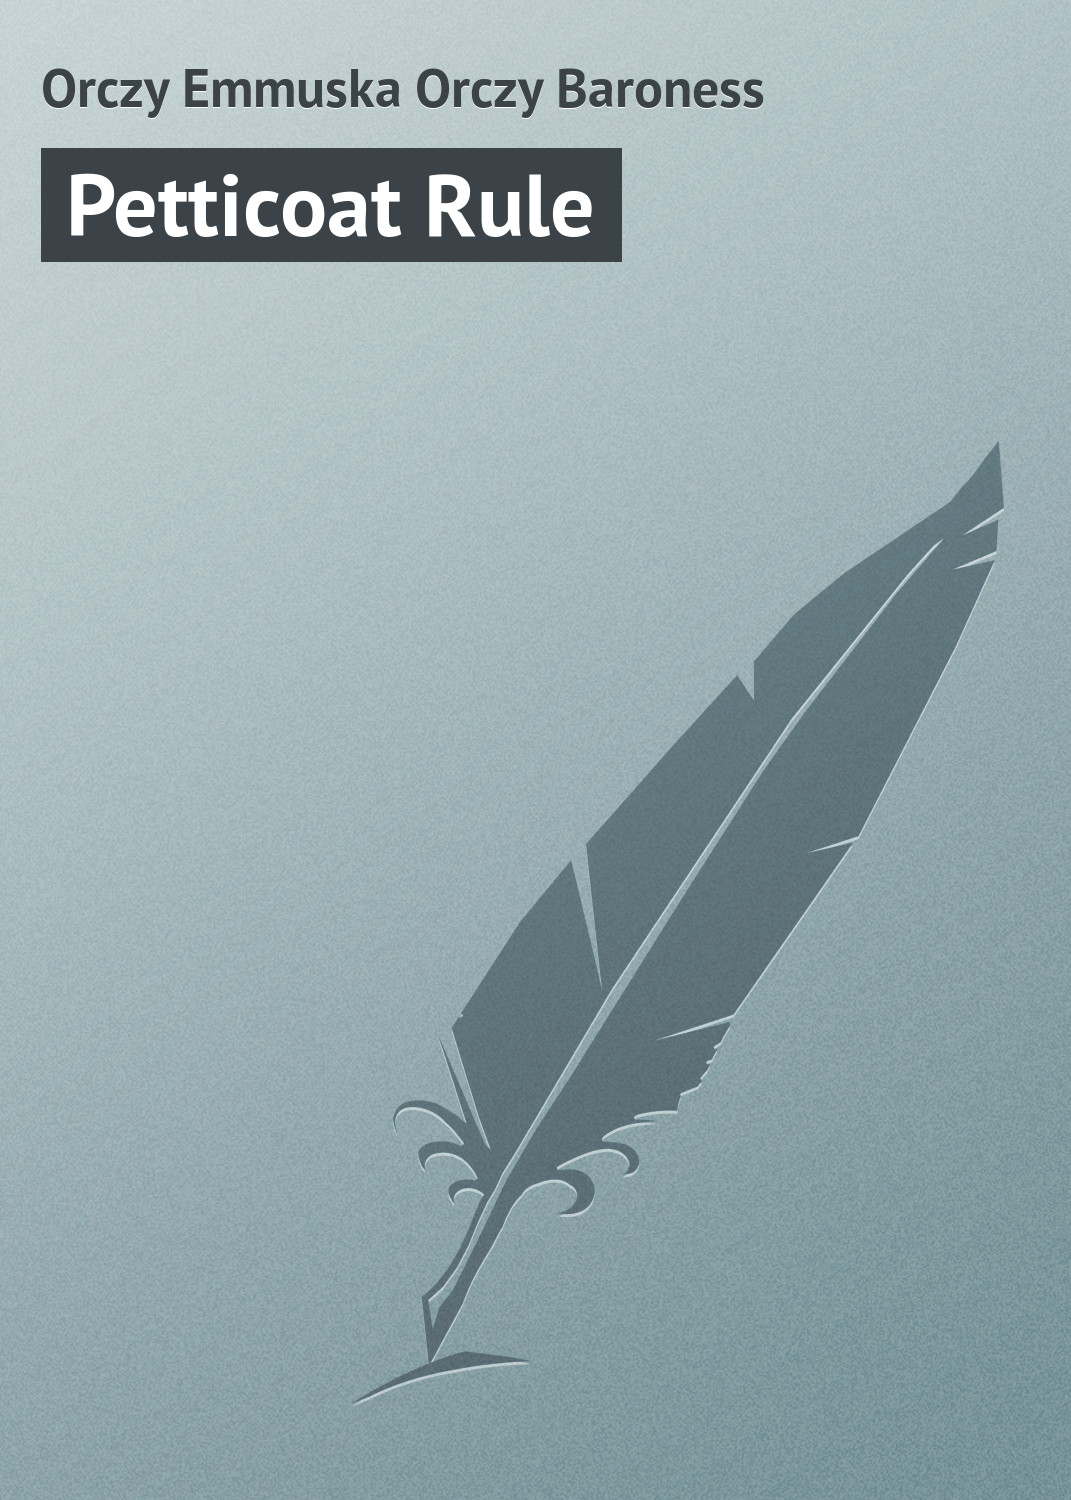 Книга Petticoat Rule из серии , созданная Emmuska Orczy, может относится к жанру Иностранные языки, Зарубежная классика, Зарубежные любовные романы. Стоимость электронной книги Petticoat Rule с идентификатором 23171827 составляет 5.99 руб.